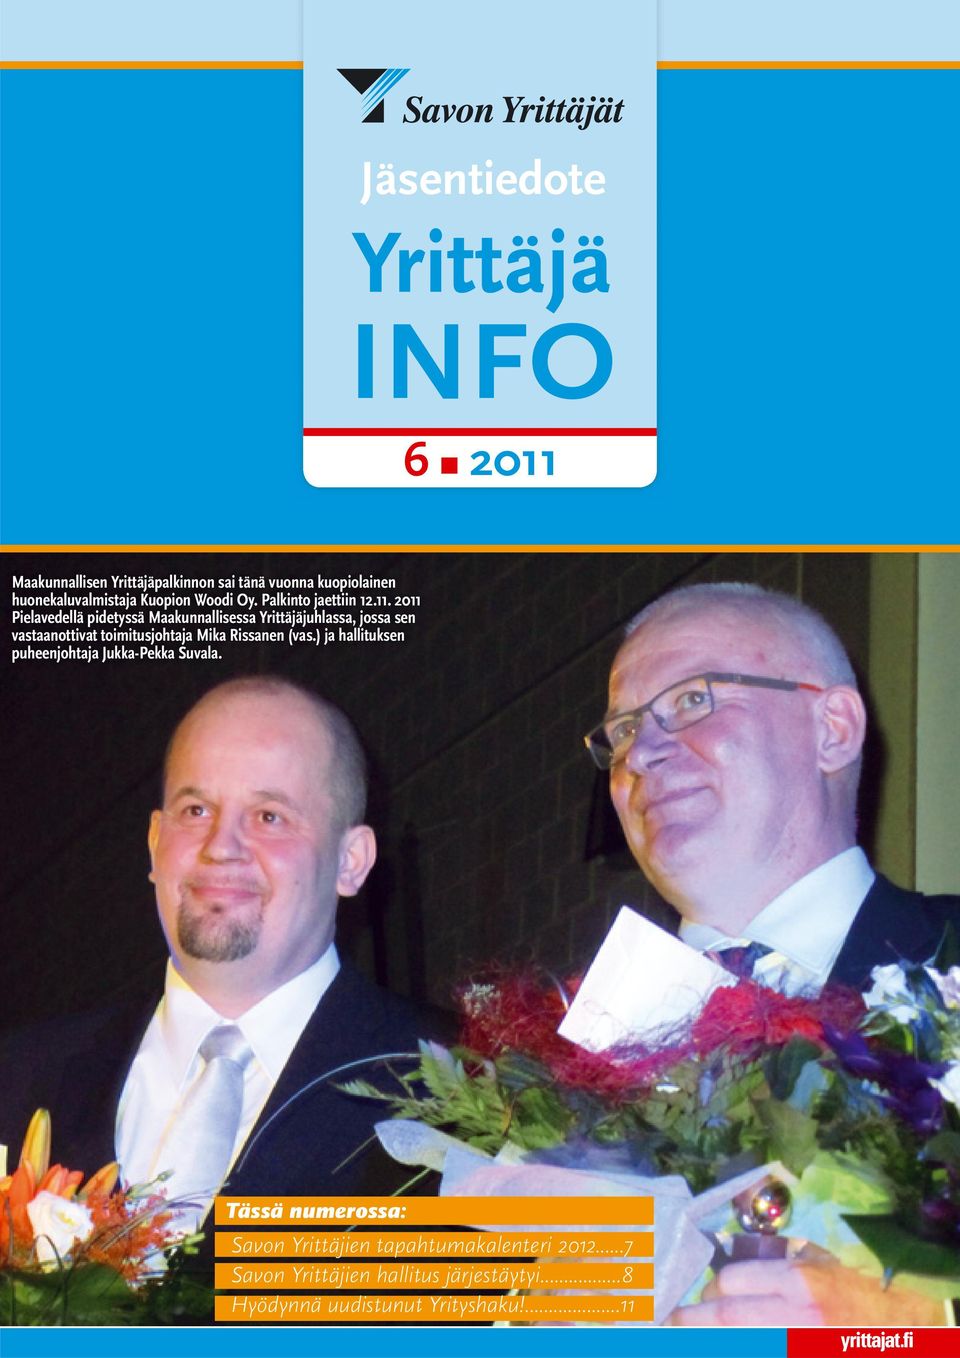 2011 Pielavedellä pidetyssä Maakunnallisessa Yrittäjäjuhlassa, jossa sen vastaanottivat toimitusjohtaja Mika